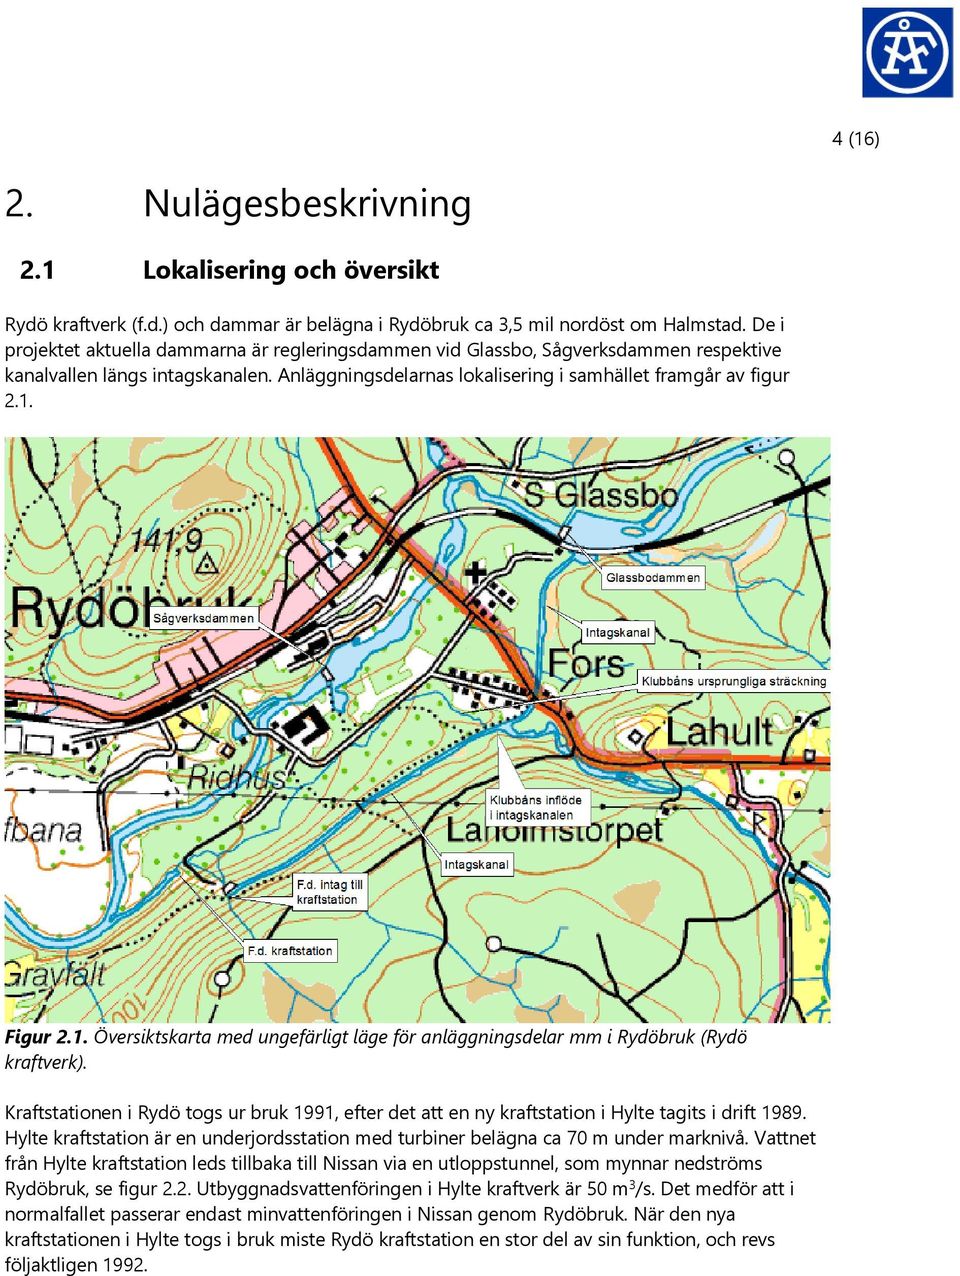 1. Översiktskarta med ungefärligt läge för anläggningsdelar mm i Rydöbruk (Rydö kraftverk). Kraftstationen i Rydö togs ur bruk 1991, efter det att en ny kraftstation i Hylte tagits i drift 1989.